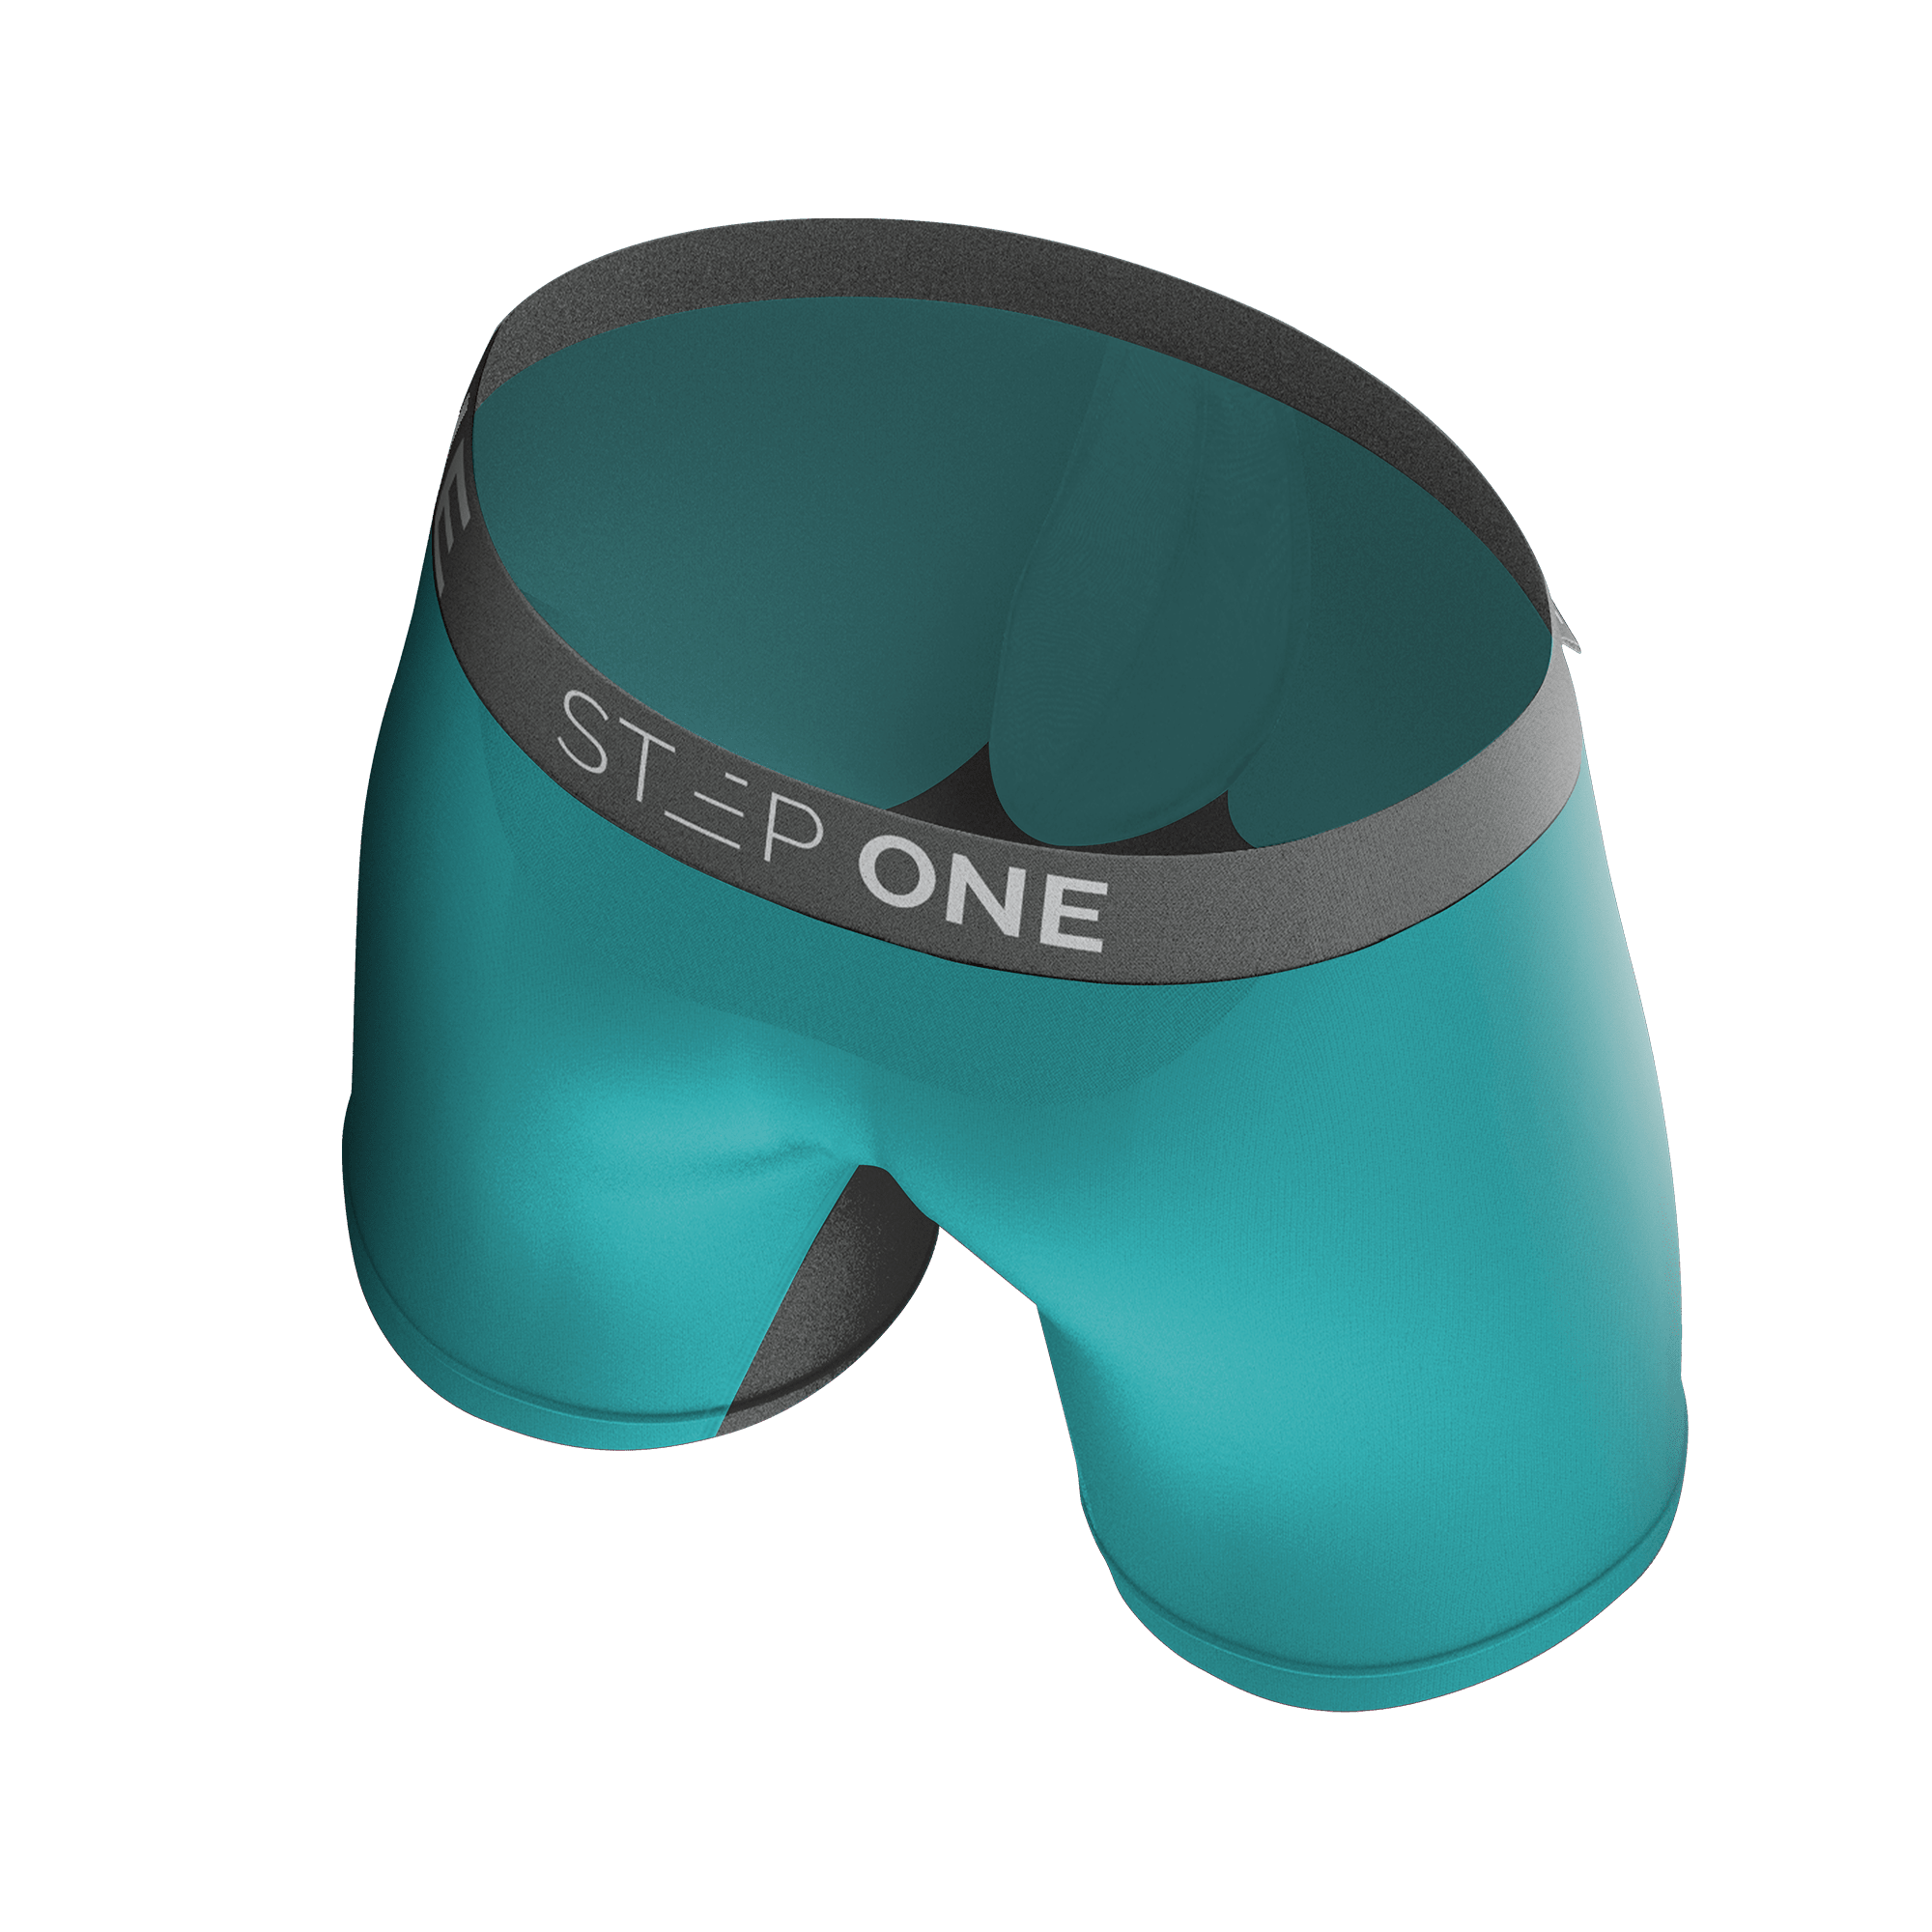 STEP ONE Mens Underwear Boxer Briefs - Underwear for Men, Moisture